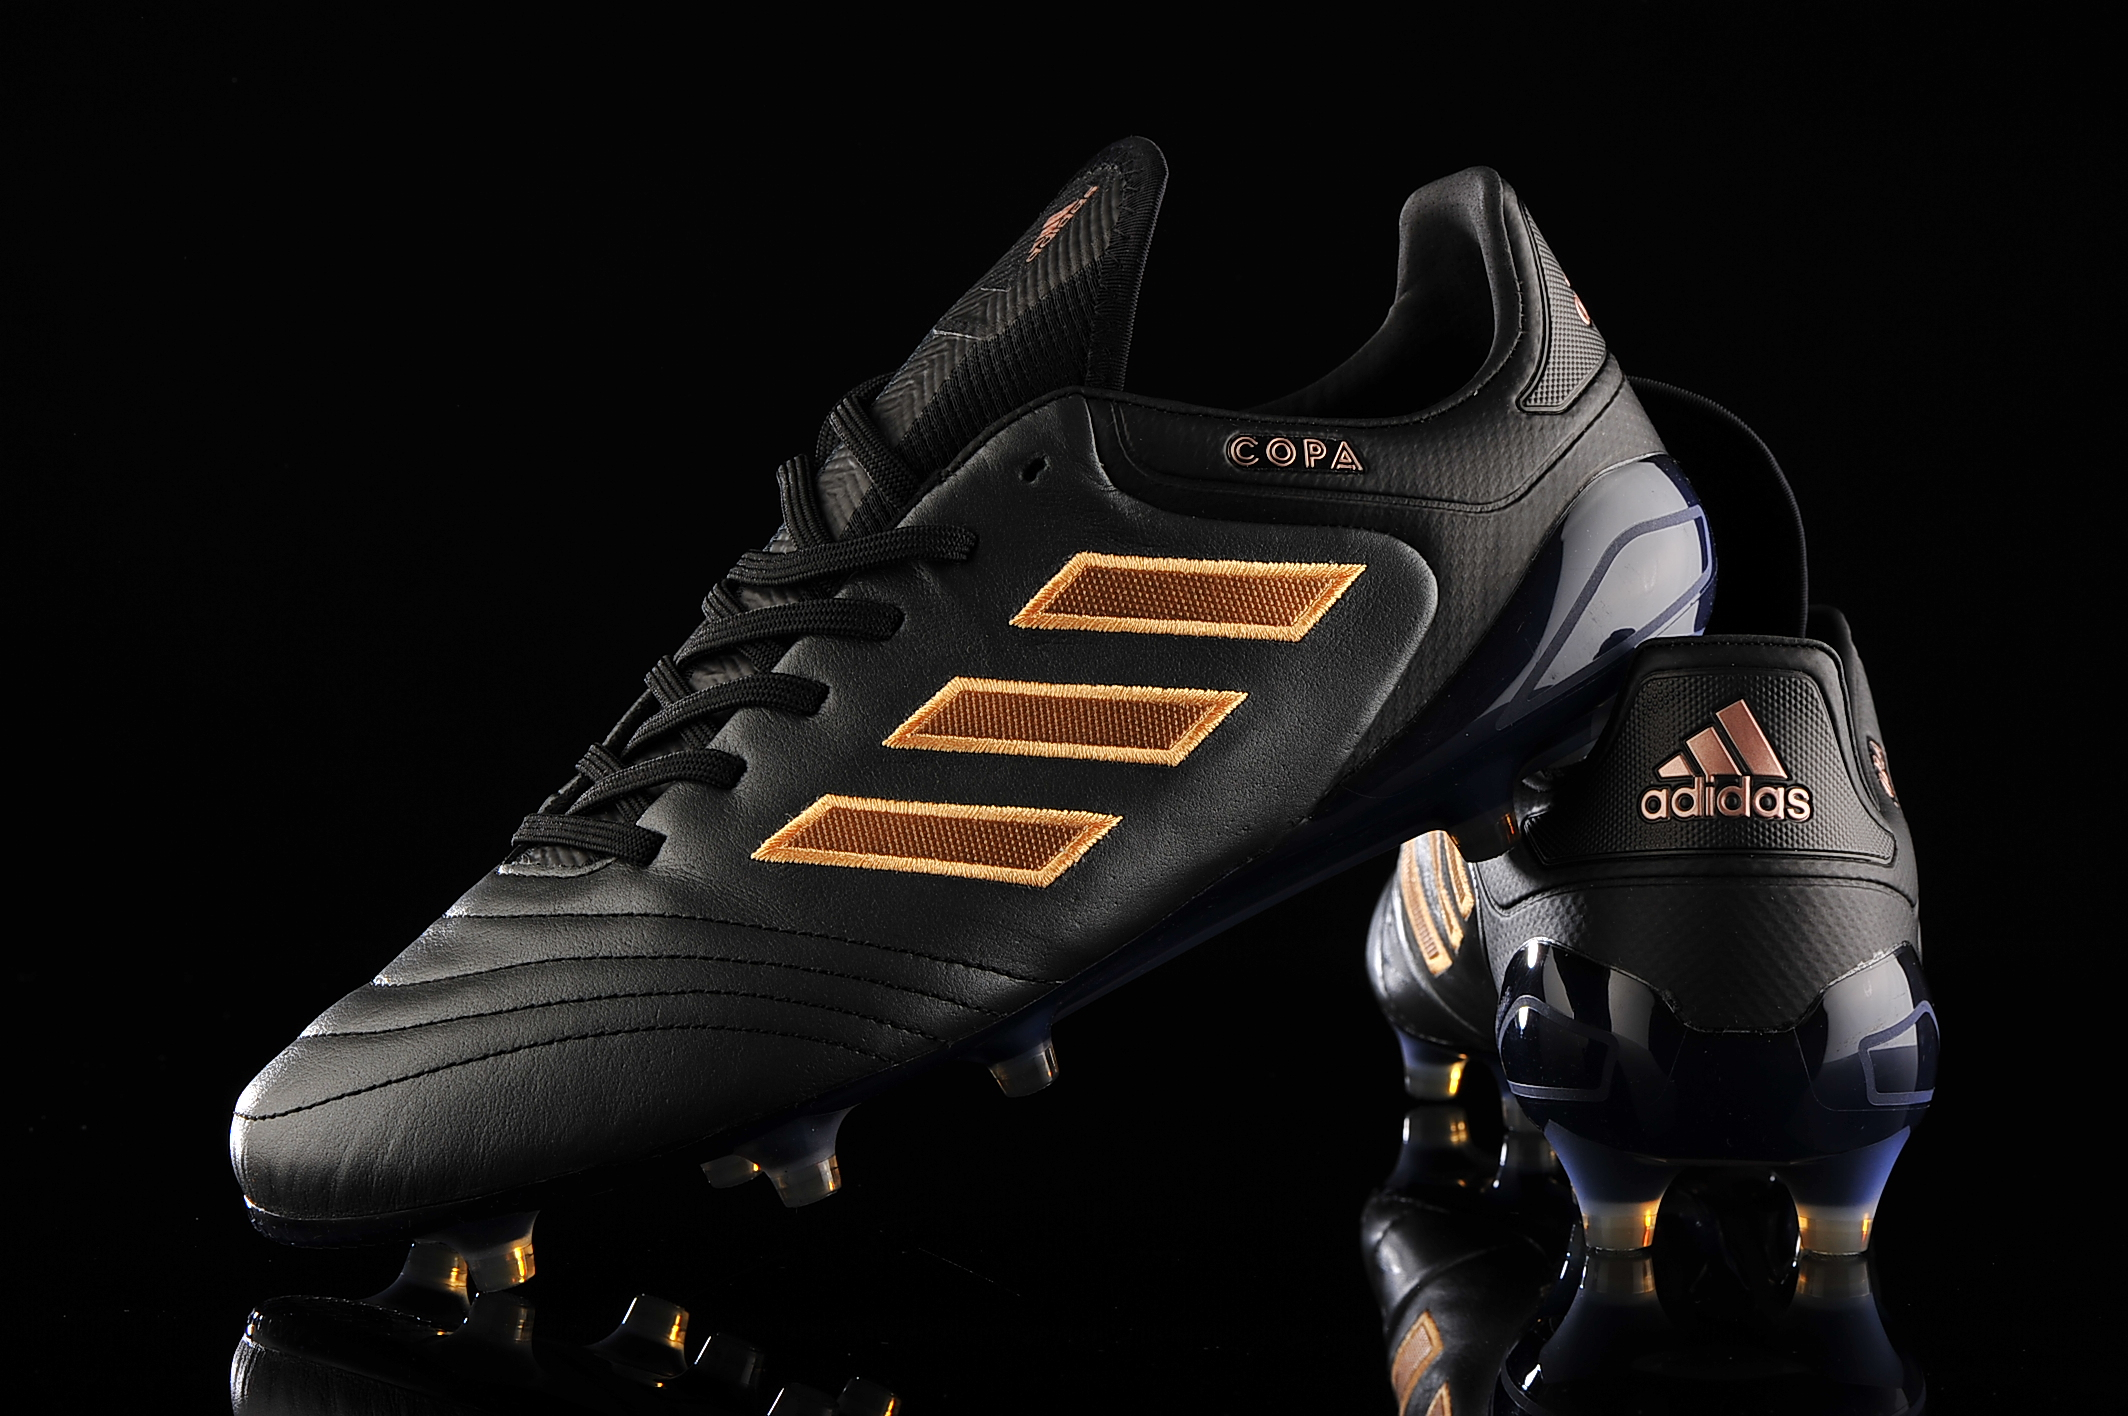 adidas Copa 17.1 BA8517 | R-GOL.com - Football boots equipment